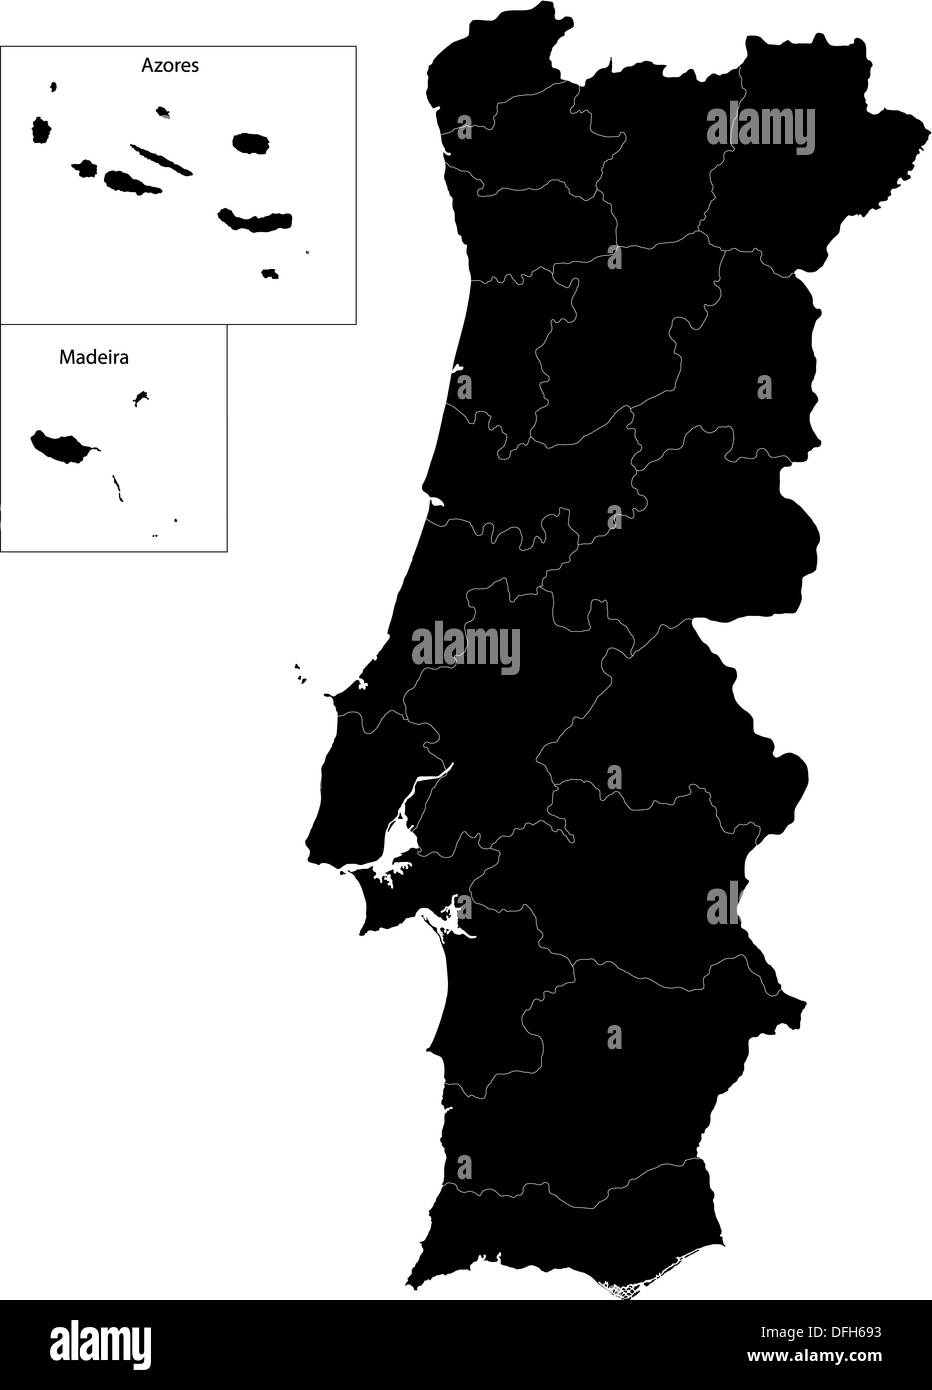 Королевство Португалия на карте. Португалия чёрная. Карта Португалии 2д. Черная карта Португалии. Border region